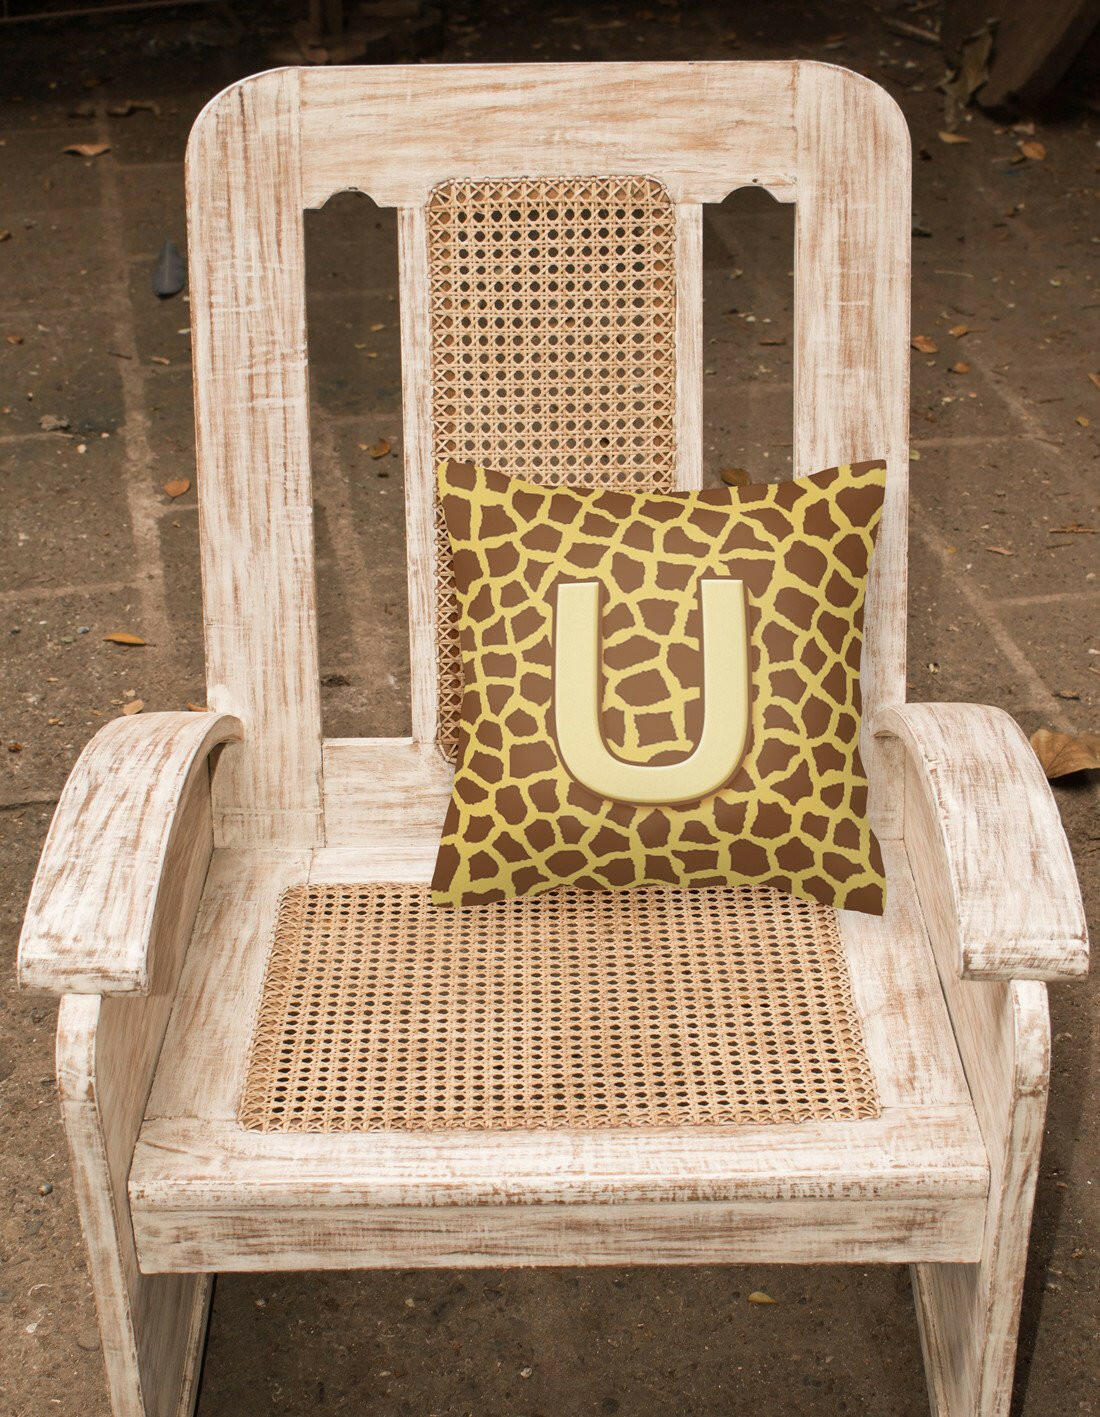 Monogram Initial U Giraffe Decorative   Canvas Fabric Pillow CJ1025 - the-store.com